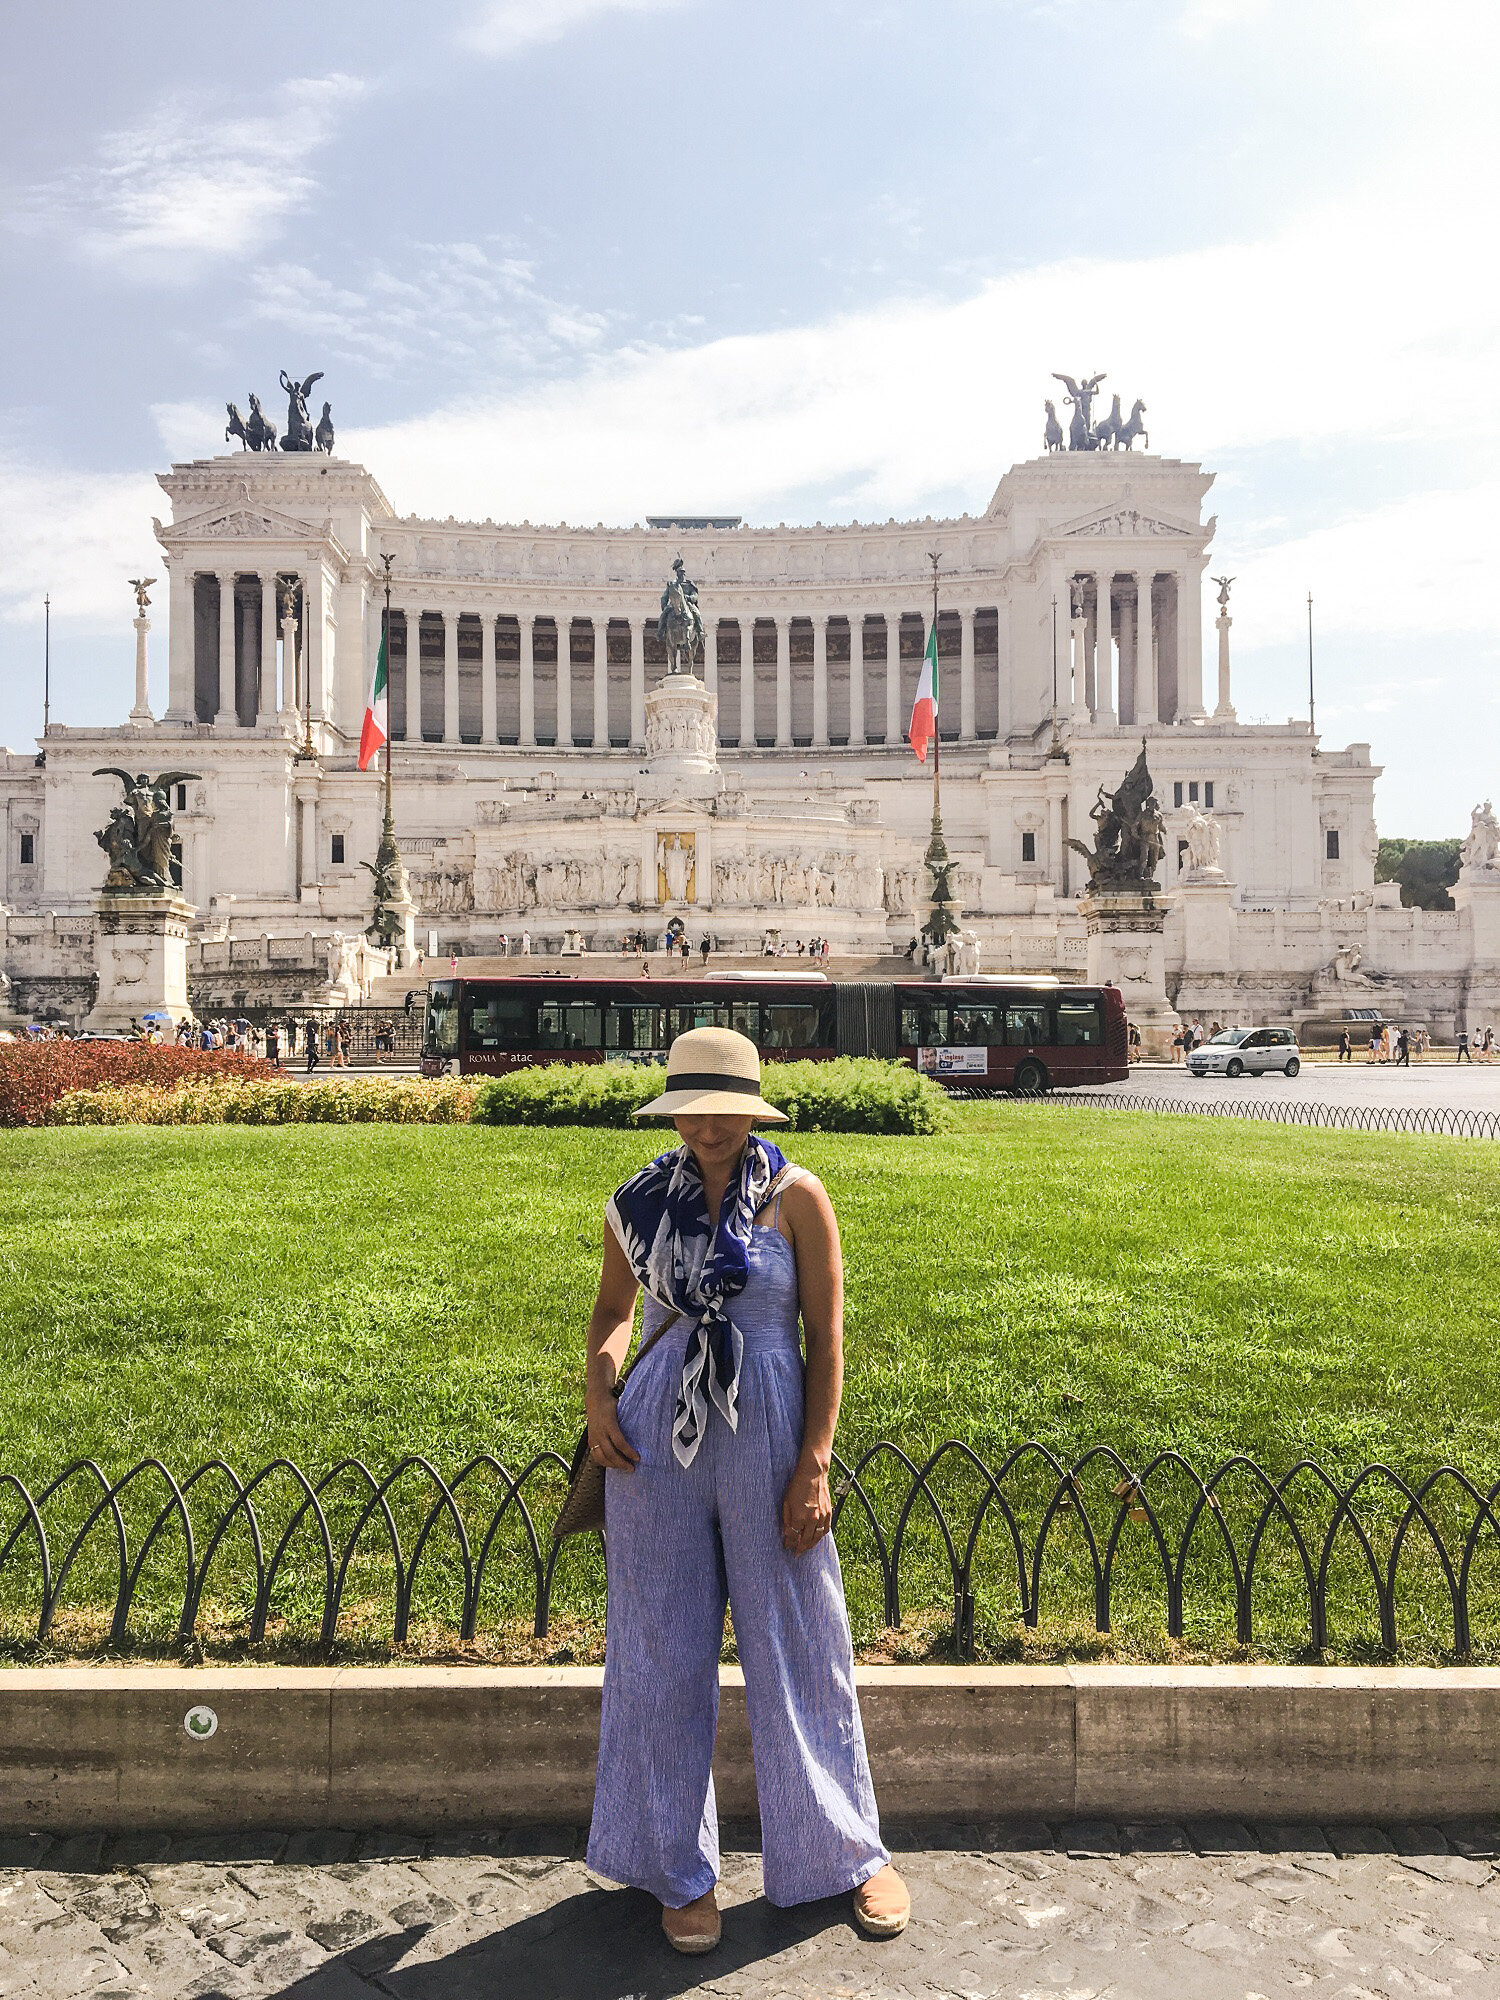 Altare Della Patria, Piazza Venezia | Blooming Magnolias Blog | Travel, Rome, Italy